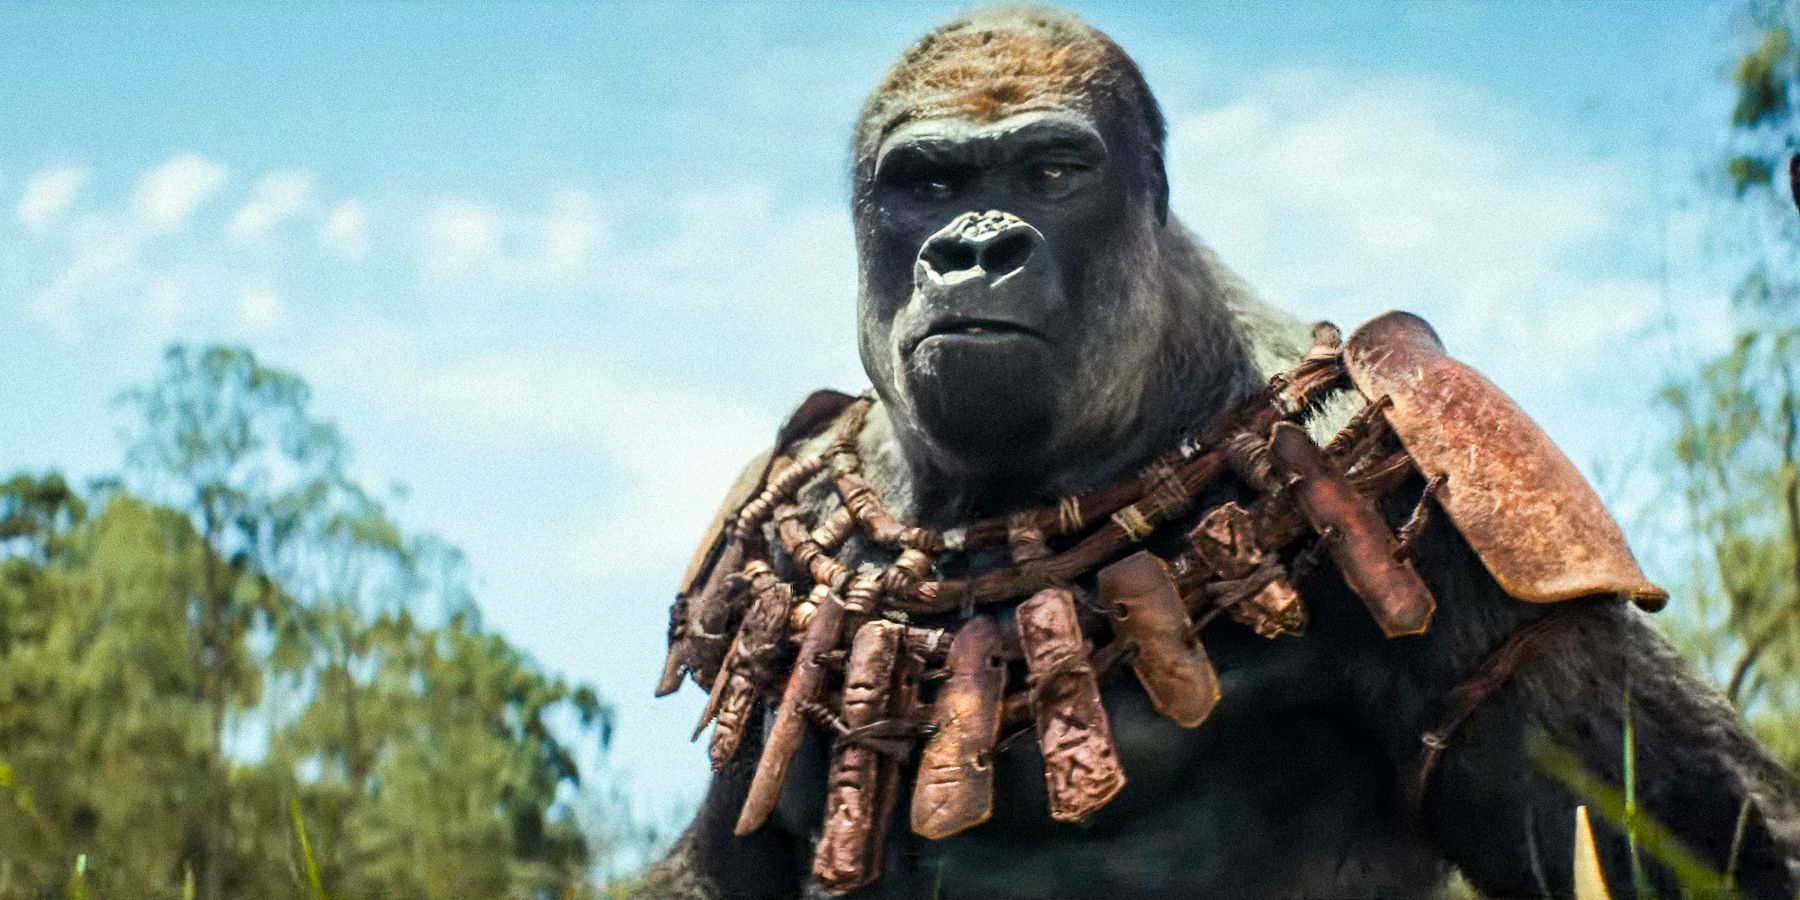 Kingdom of The Planet of The Apes Neden Önceki Apes Filmlerinden 300 Yıl Sonra Geçiyor?